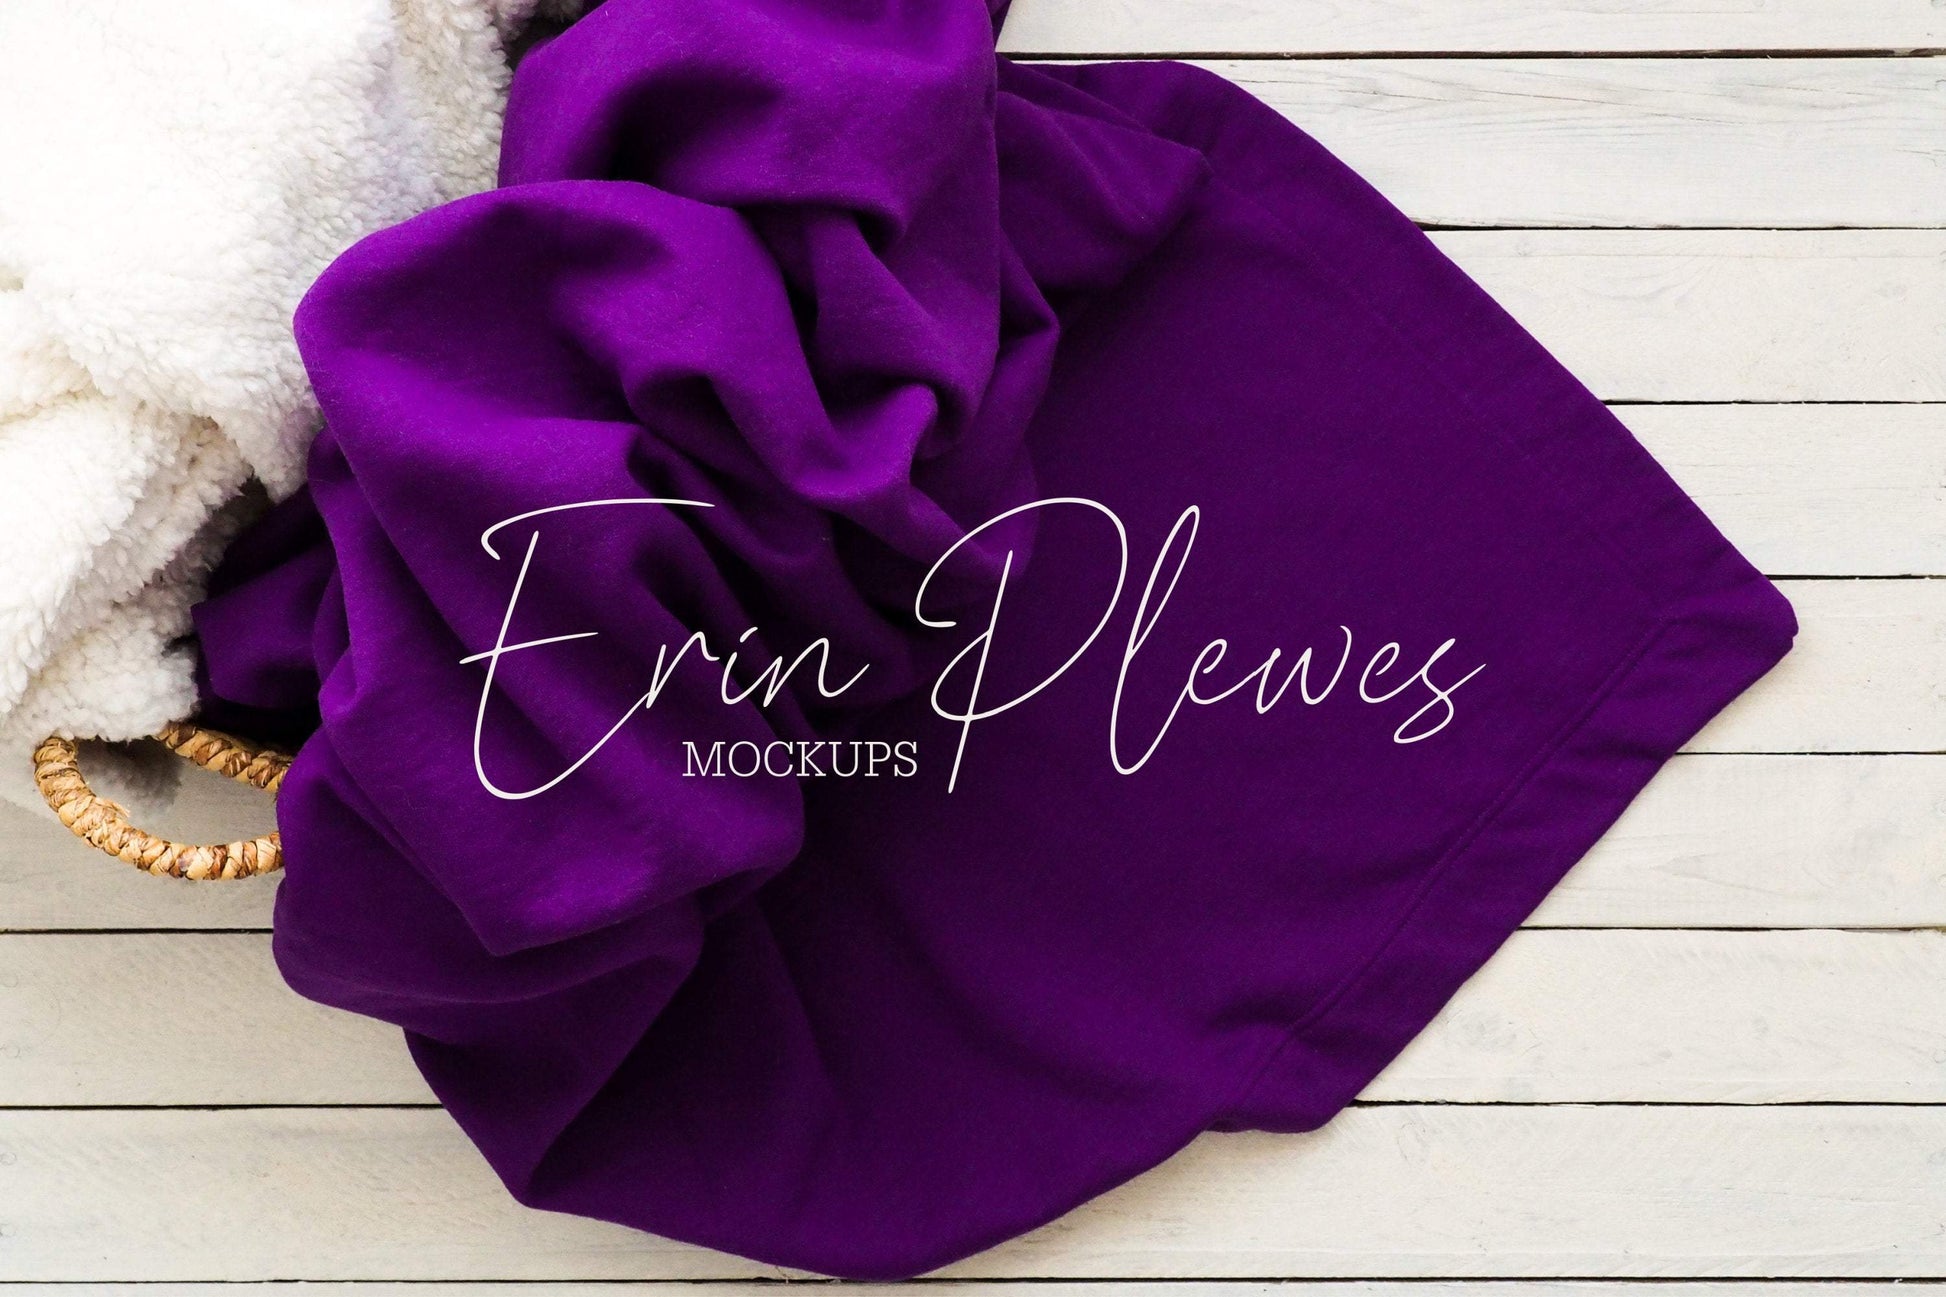 Erin Plewes Mockups Stadium Blanket Mockup, Purple Gildan blanket mock-up in a basket for lifestyle stock photography, Blanket mock up jpeg digital download